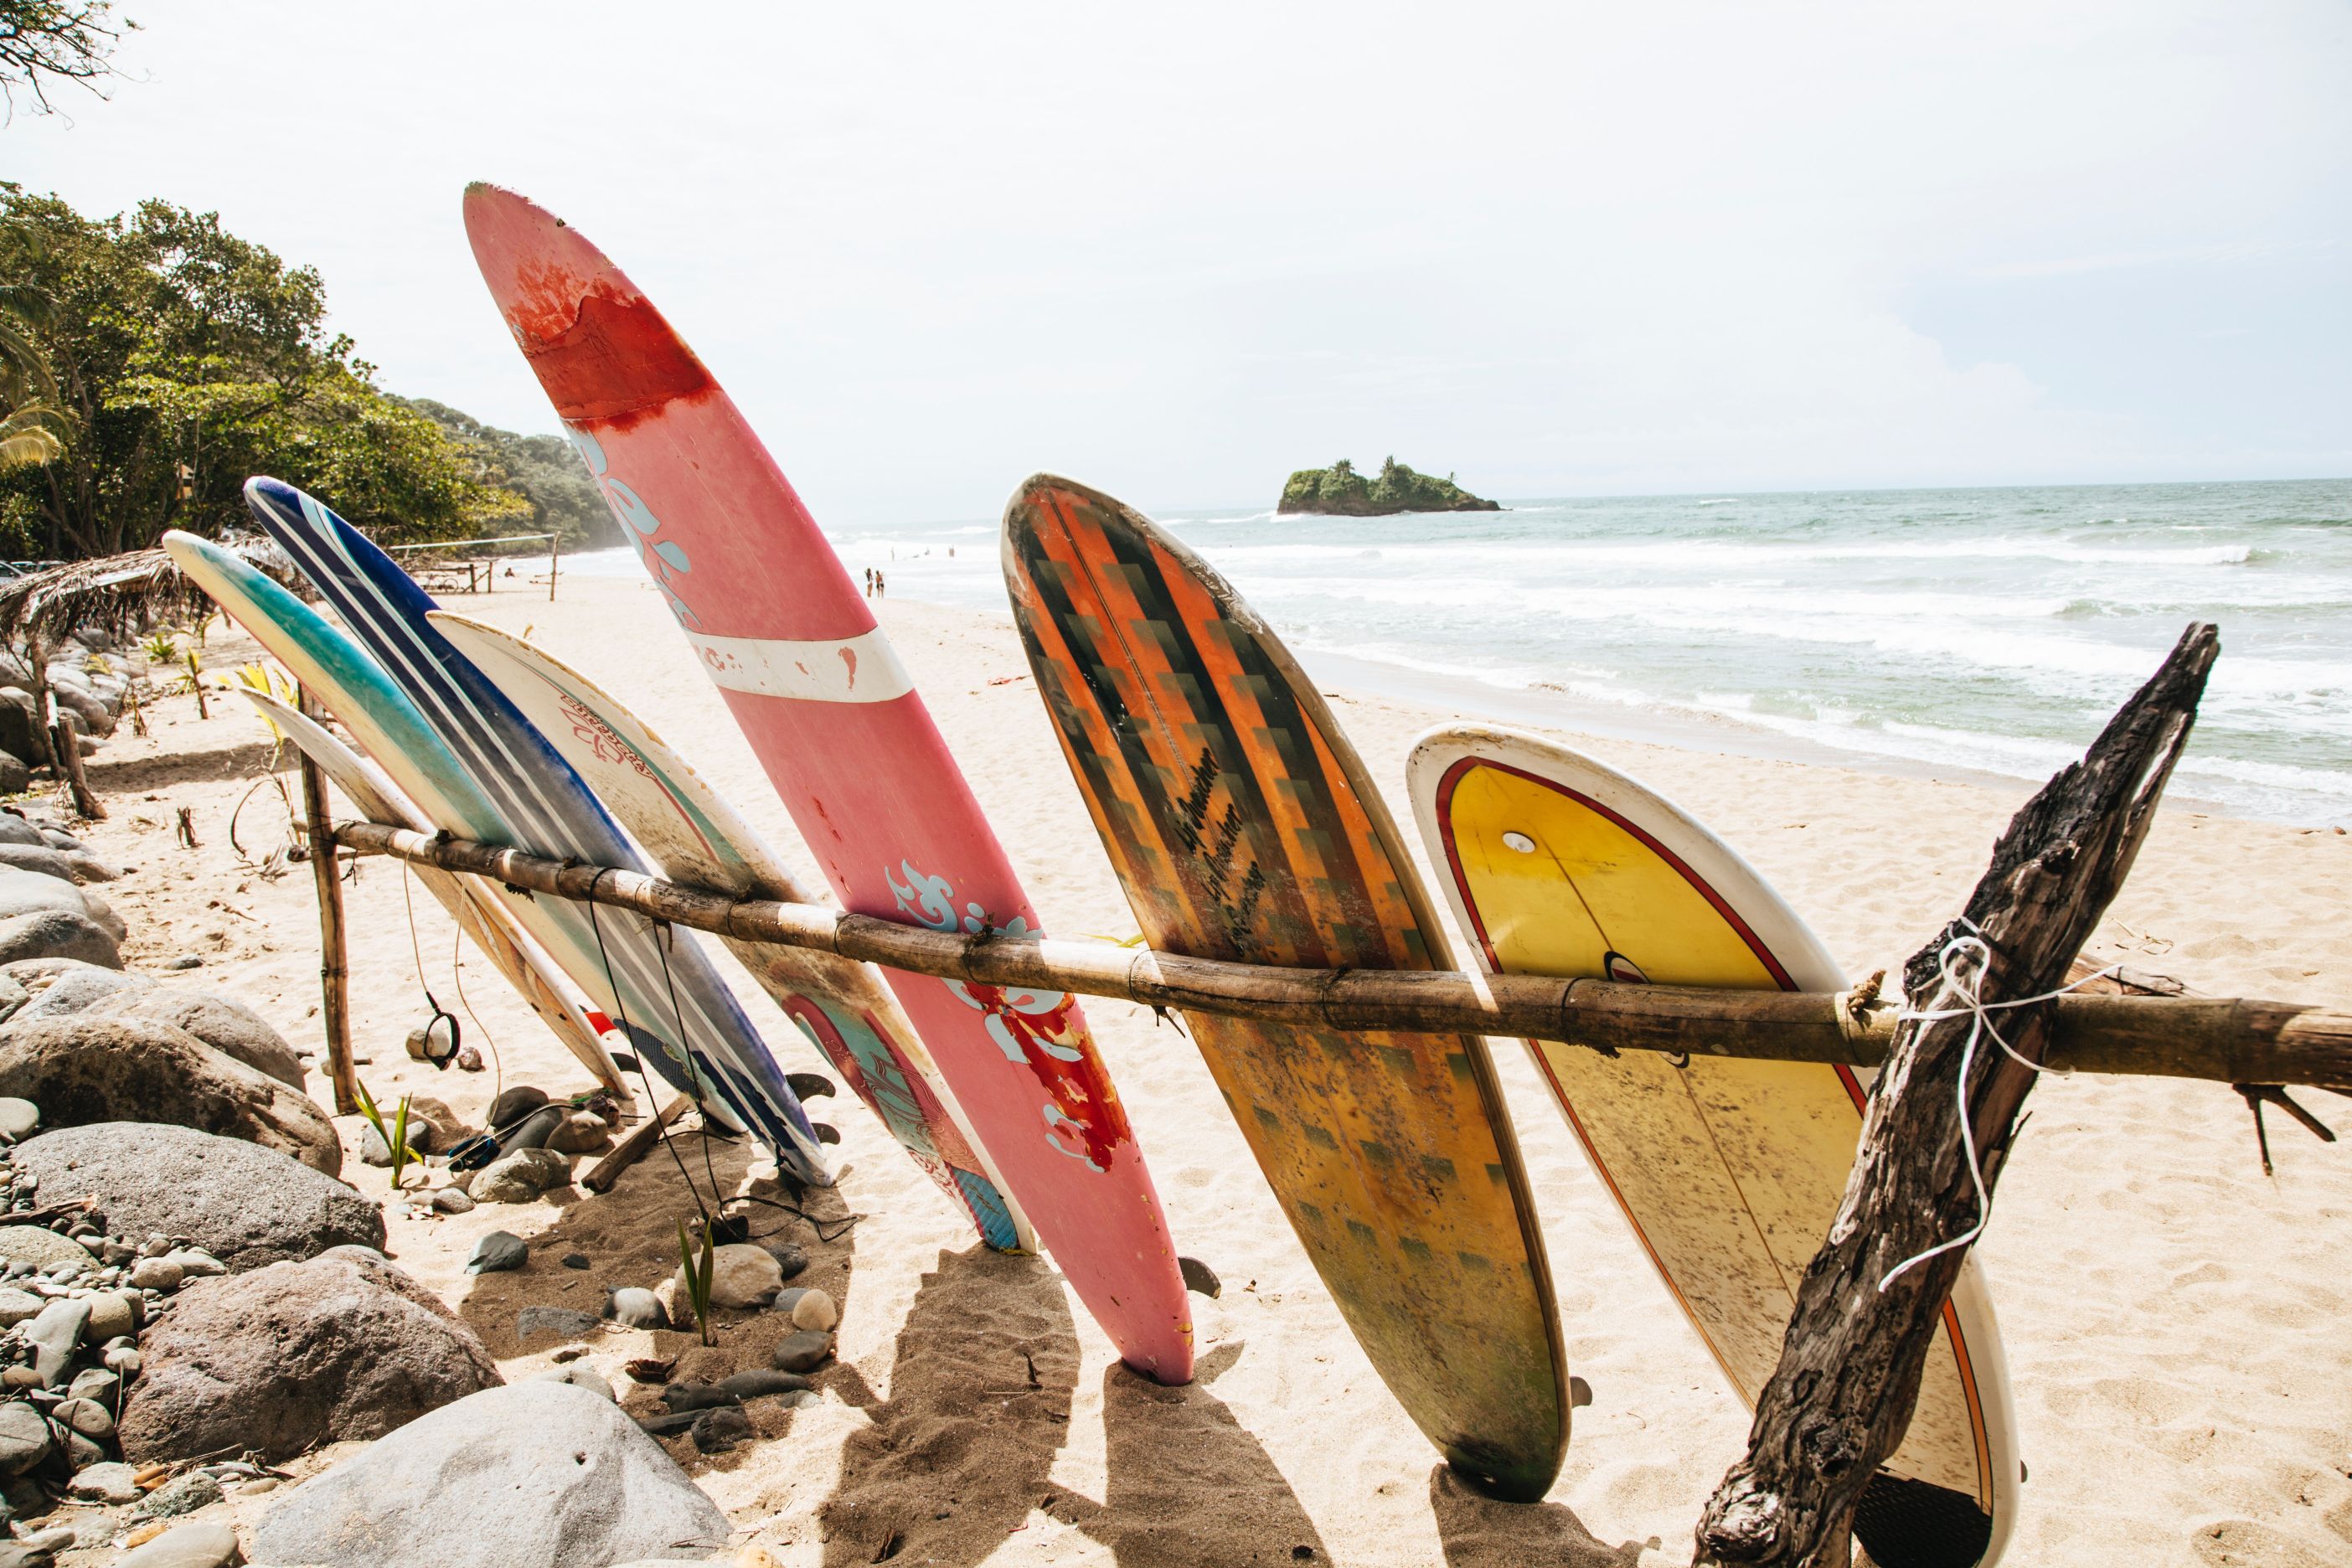 Surfboards on a tropical beach.